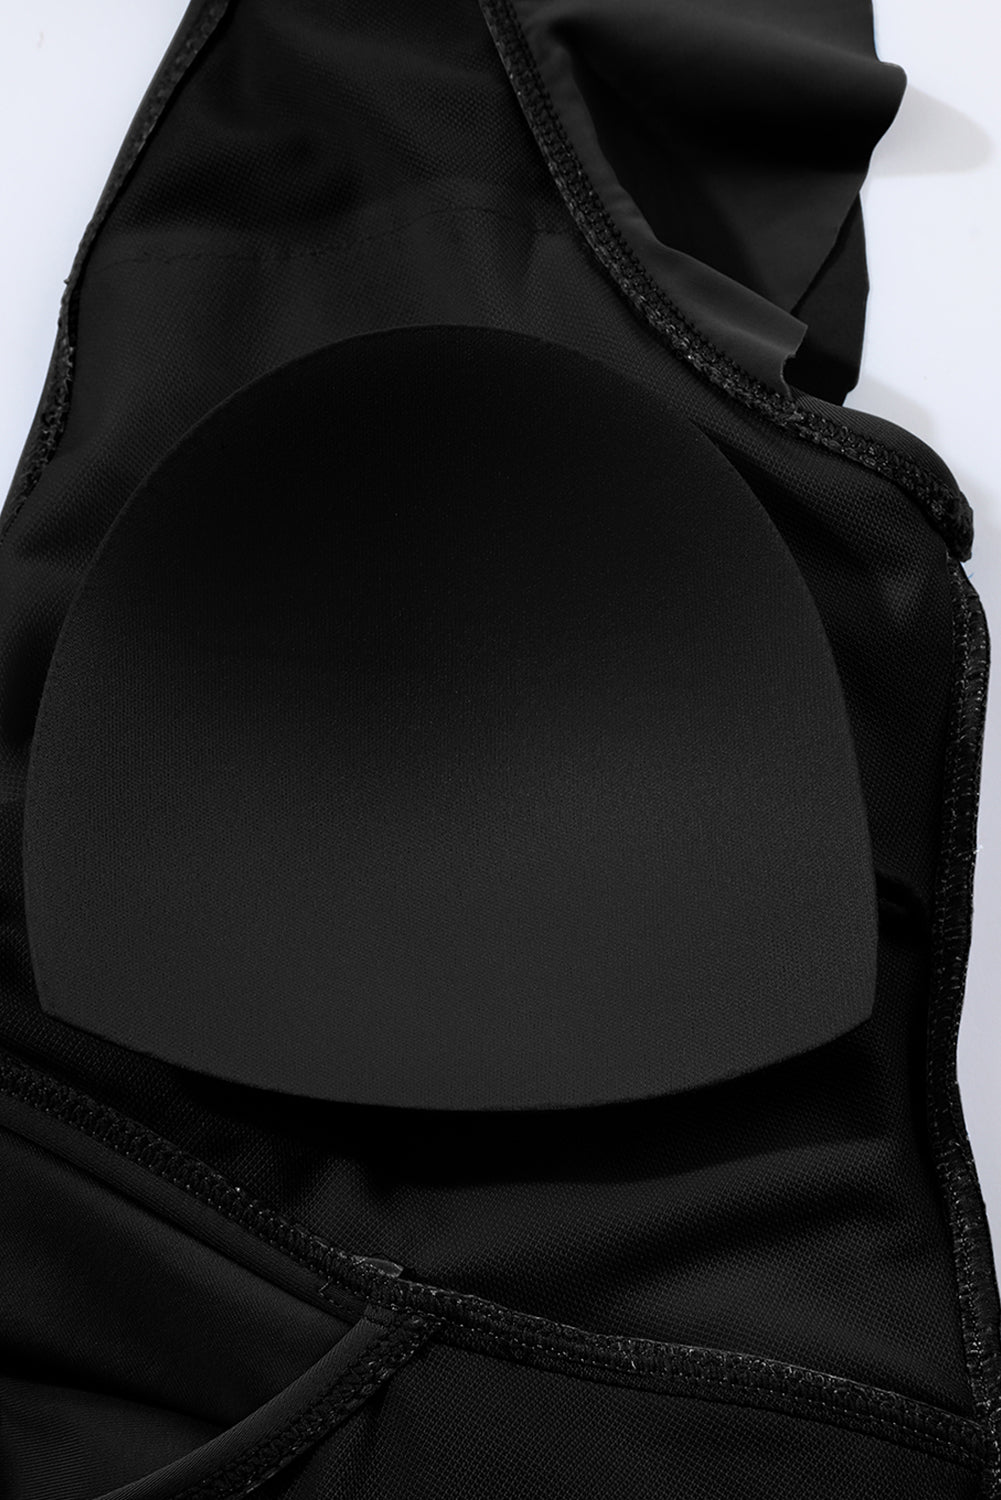 Crna jednodijelna kupaća haljina s prekriženim izrezima u 2 boje